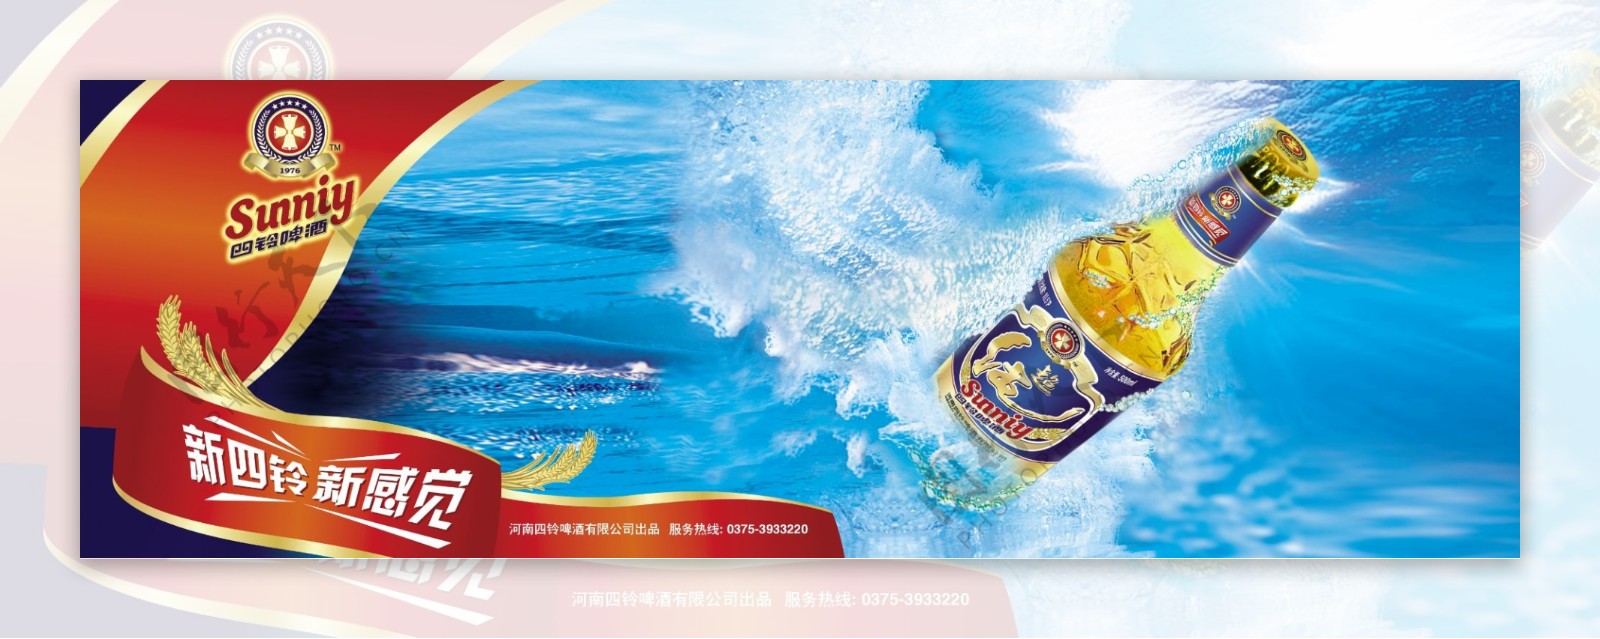 四铃啤酒广告图片